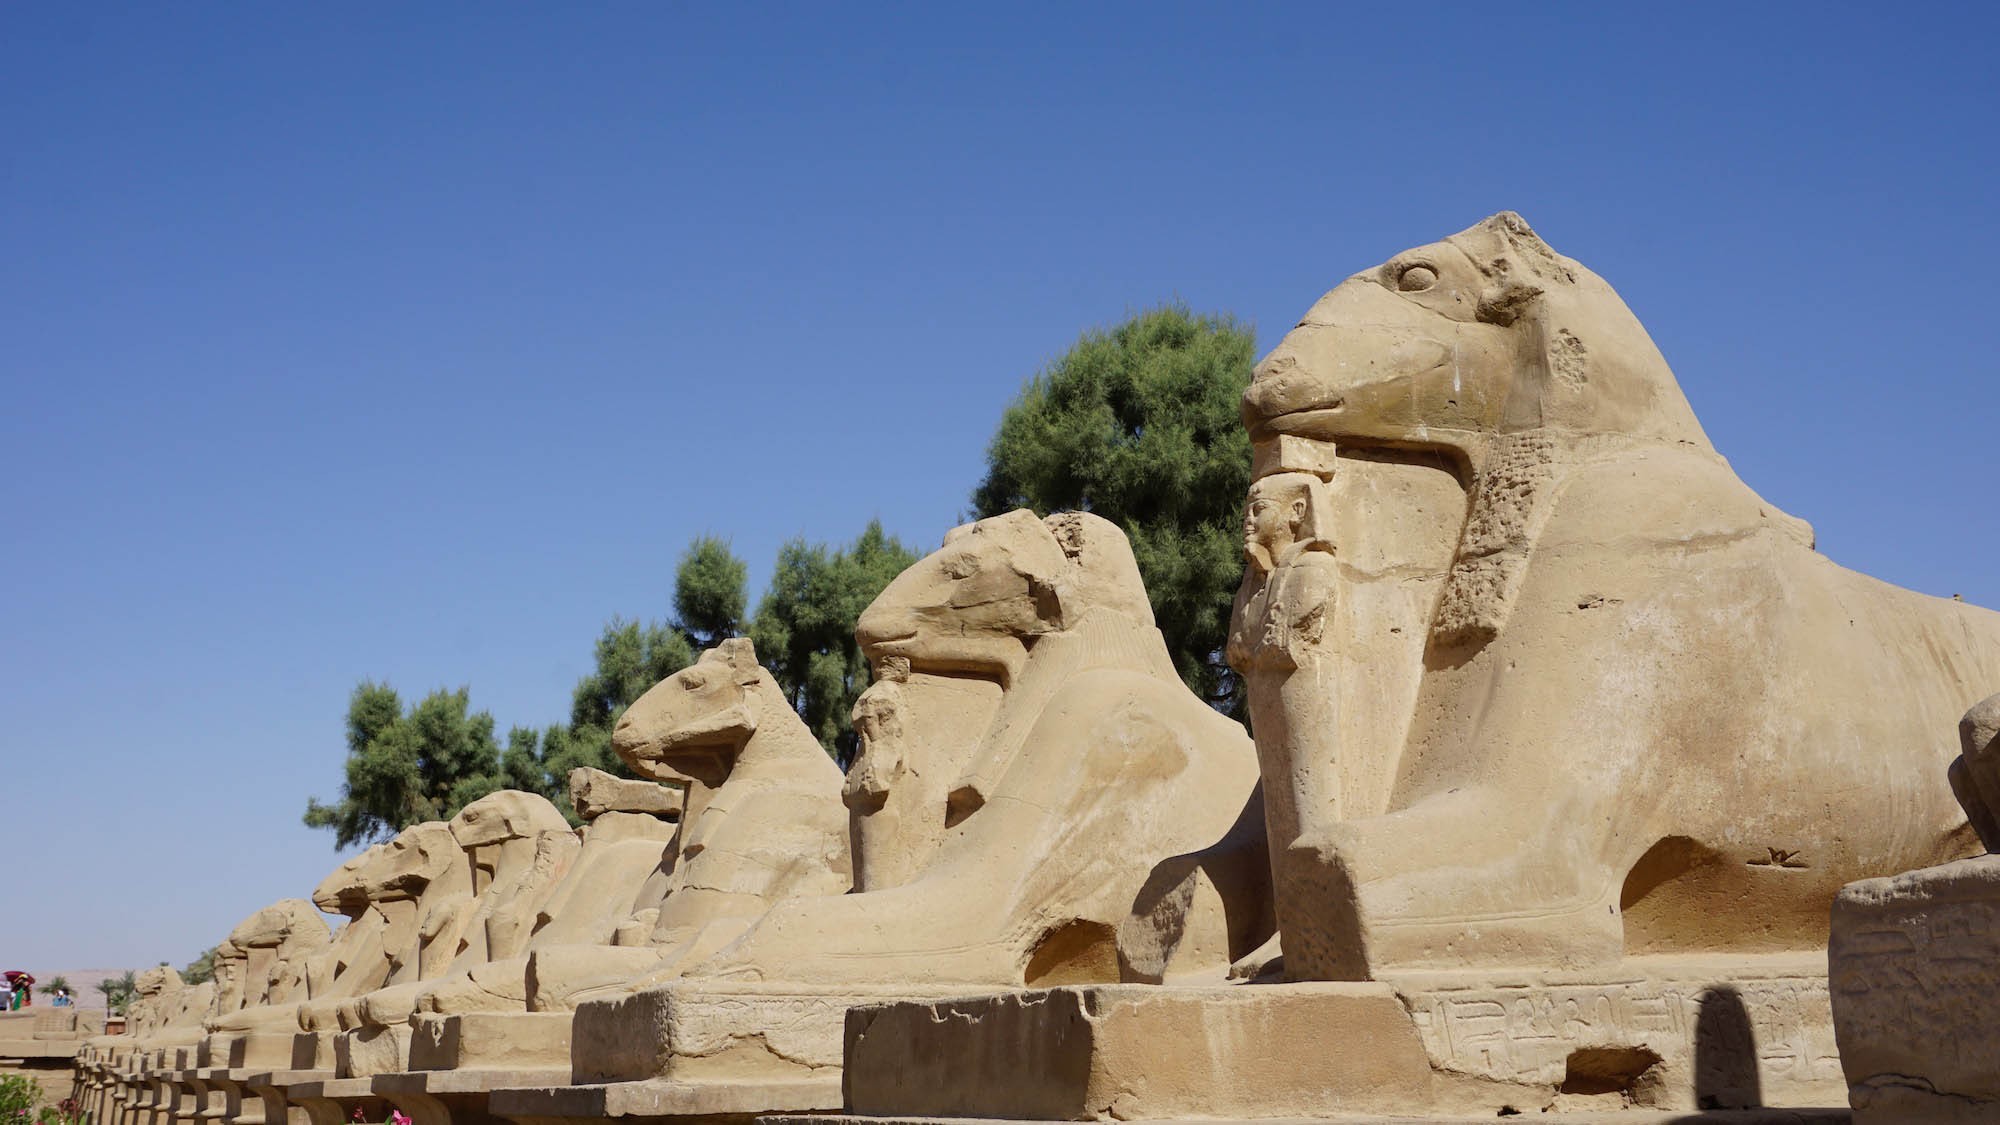 Sphinx，称为人面狮身像，除了人面，也可以由鹰头或羊头组成。